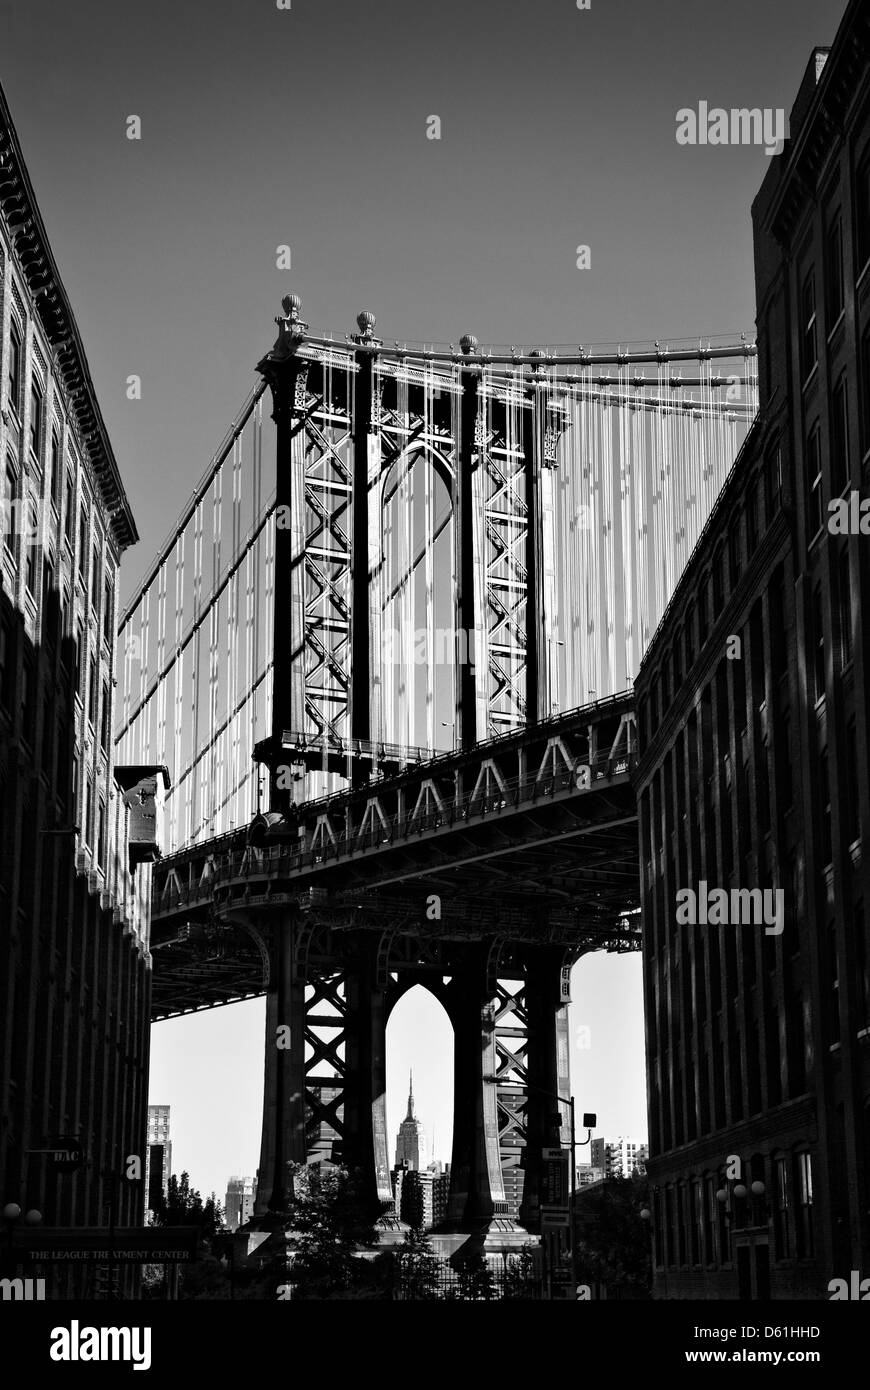 Manhattan Bridge, vista desde Brooklyn Heights, Nueva York, Estados Unidos de América - Imagen tomada de suelo público Foto de stock